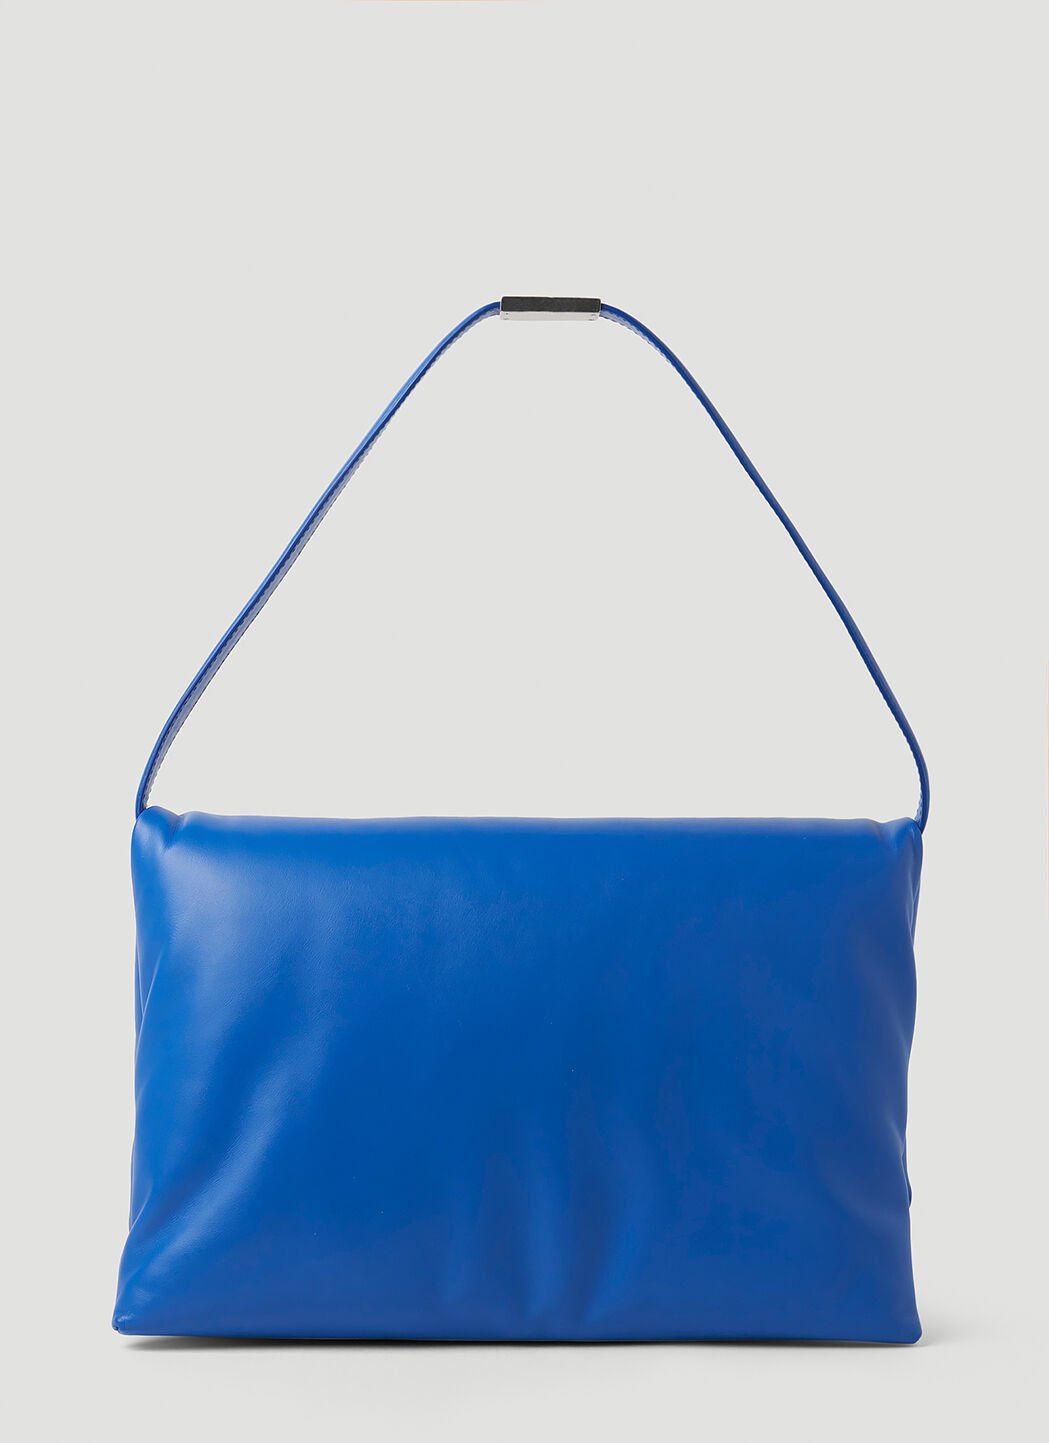 Marni Prisma Small Shoulder Bag Blue mni0251028